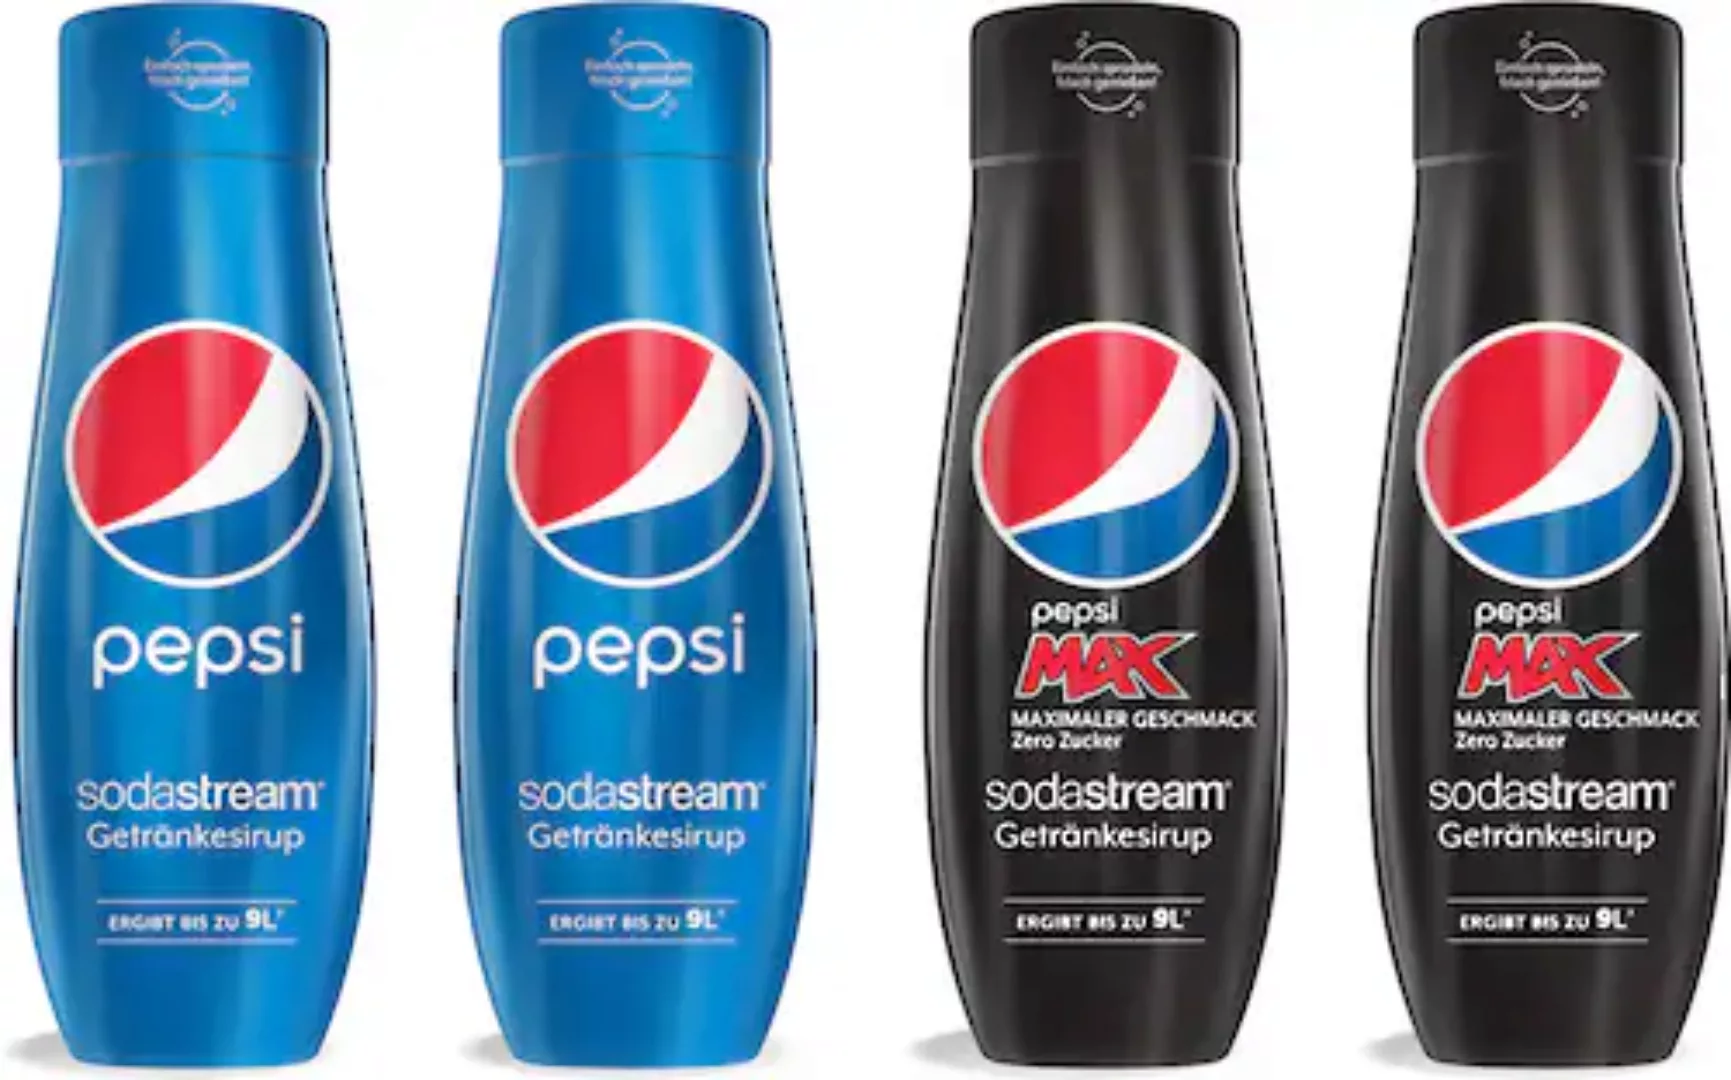 SodaStream Getränke-Sirup, Pepsi & PepsiMax, (4 Flaschen) günstig online kaufen